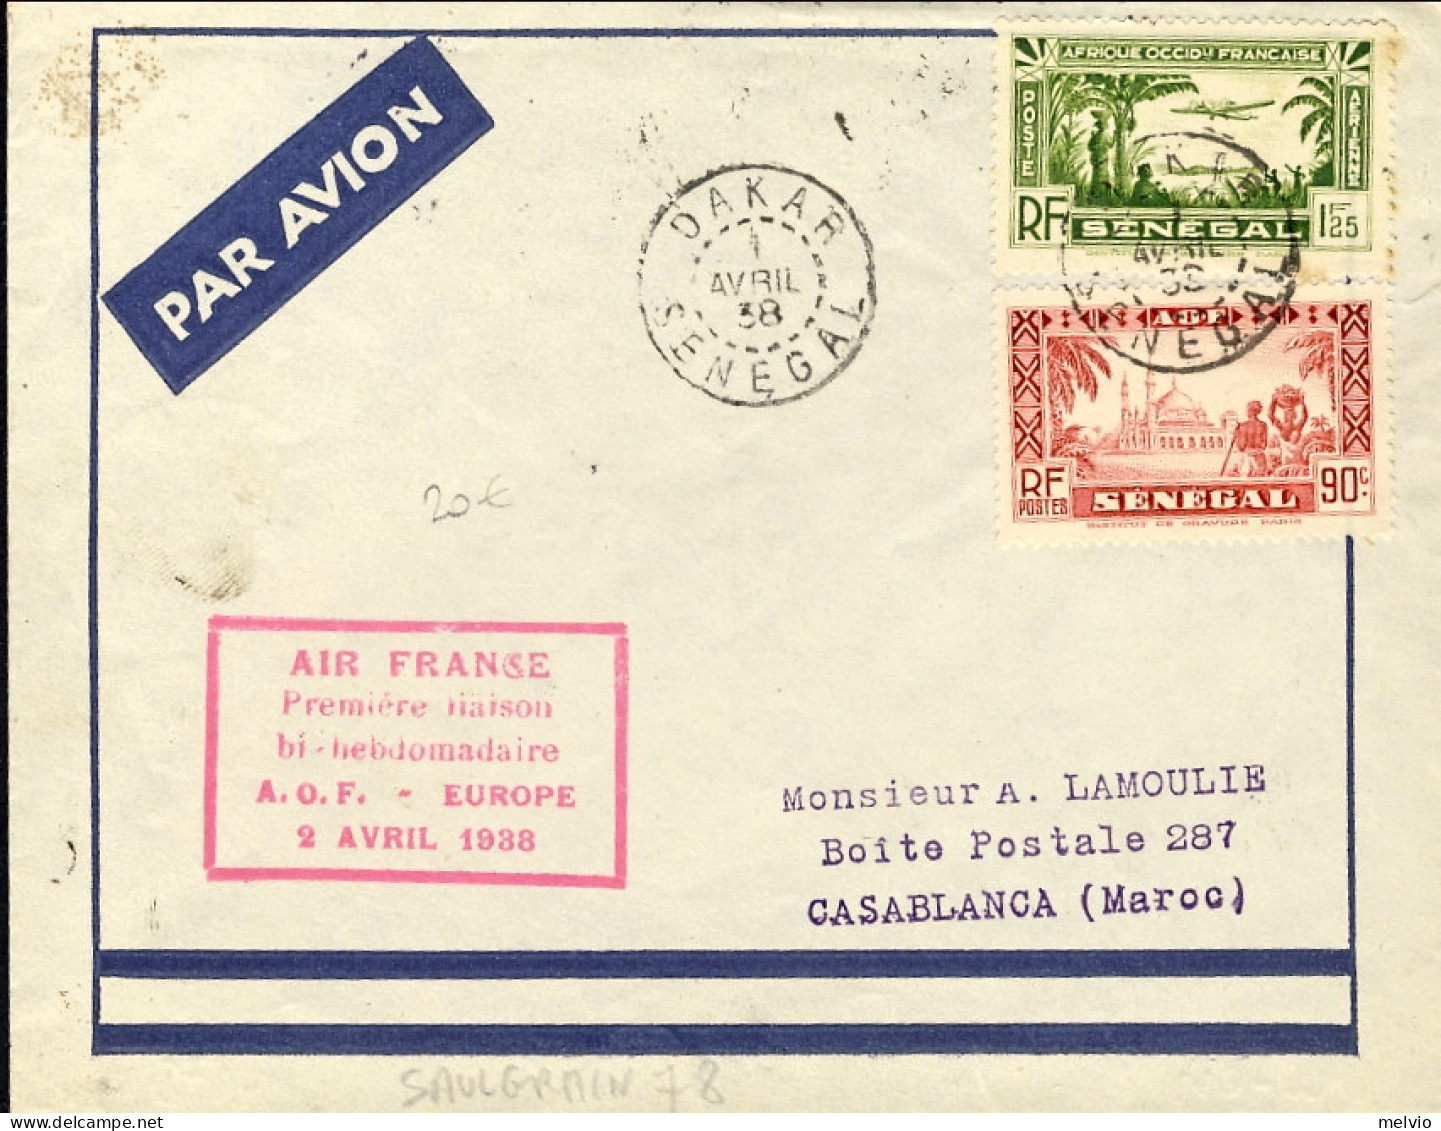 1938-Senegal Volo Premiere Liason By-hebdomadaire A.O.F.-Europe Del 2 Aprile - Covers & Documents